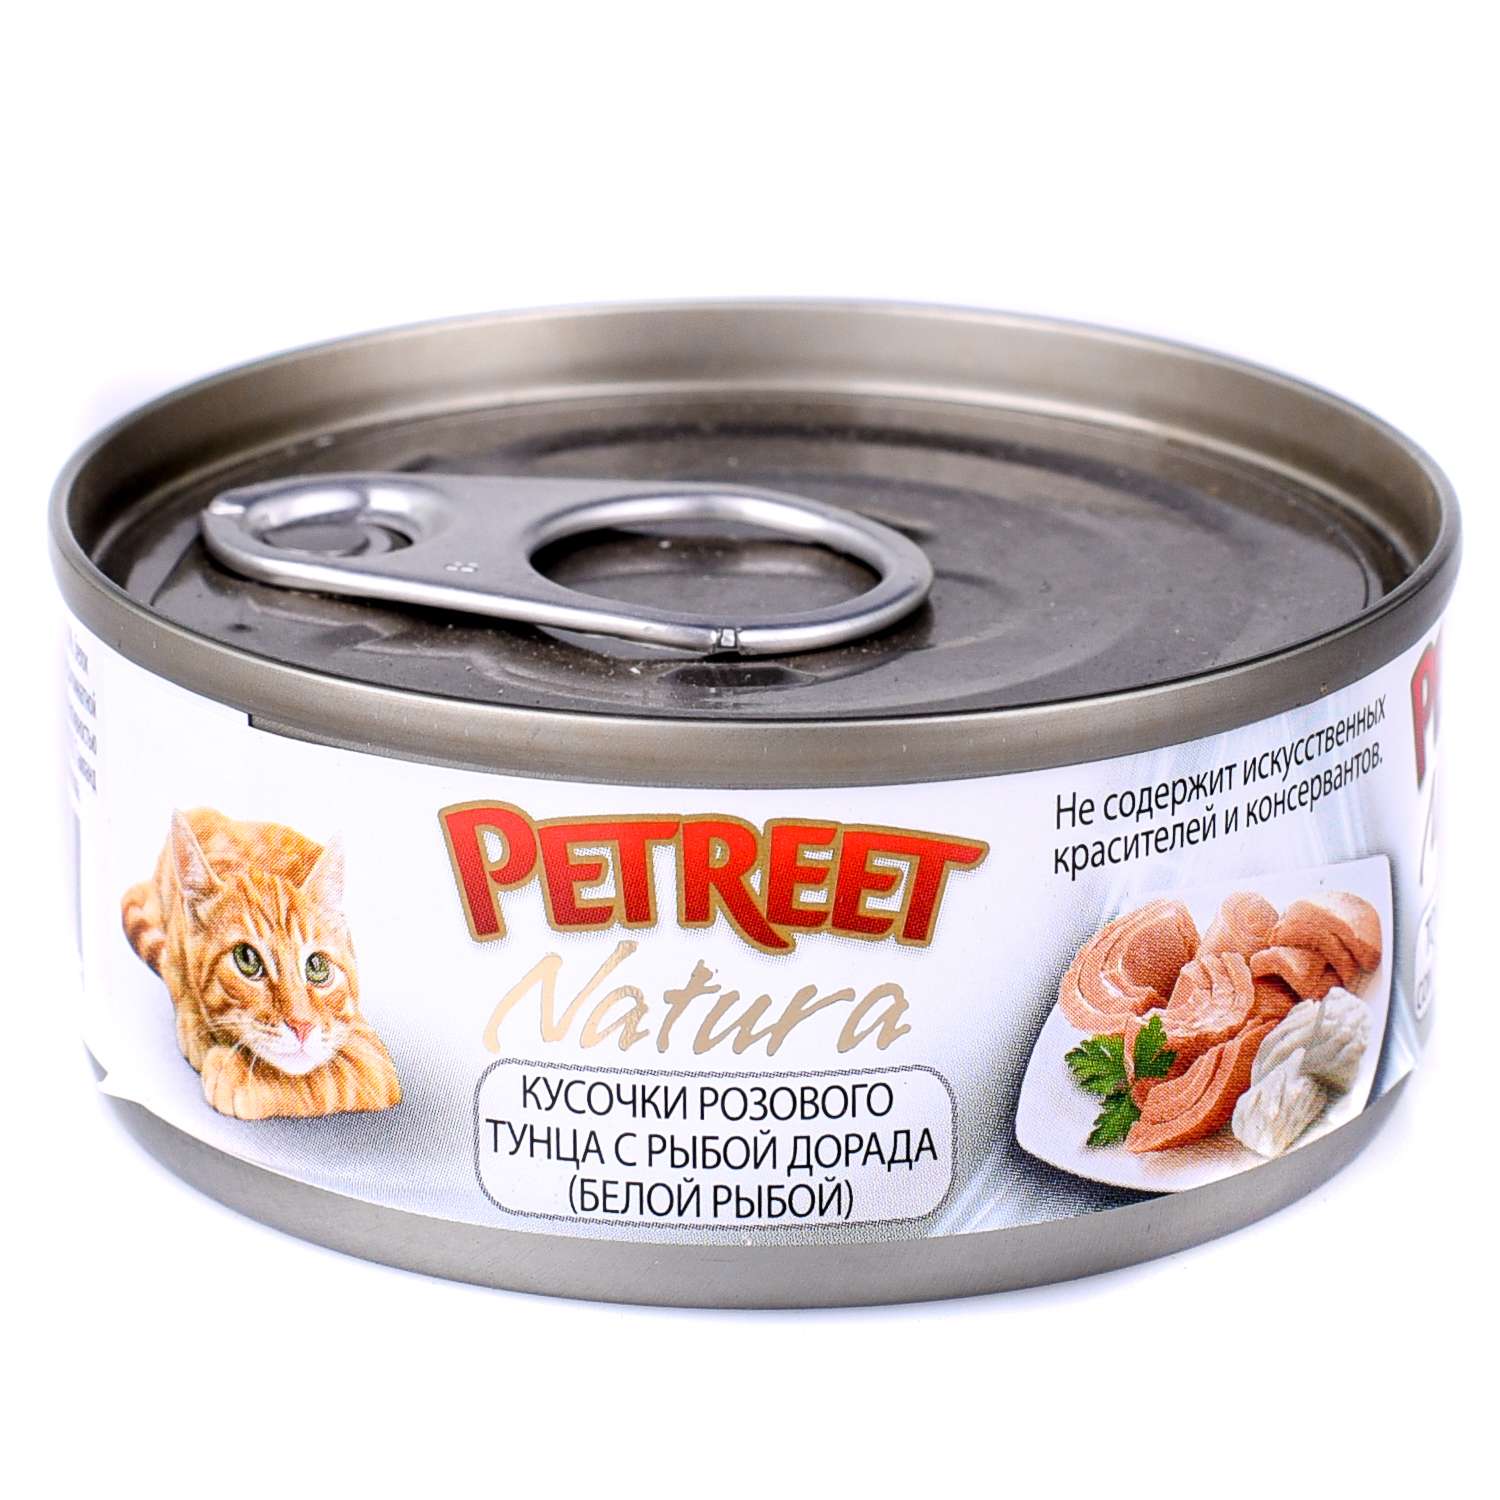 Корм влажный для кошек Petreet 70г кусочки розового тунца с рыбой дорада консервированный - фото 2